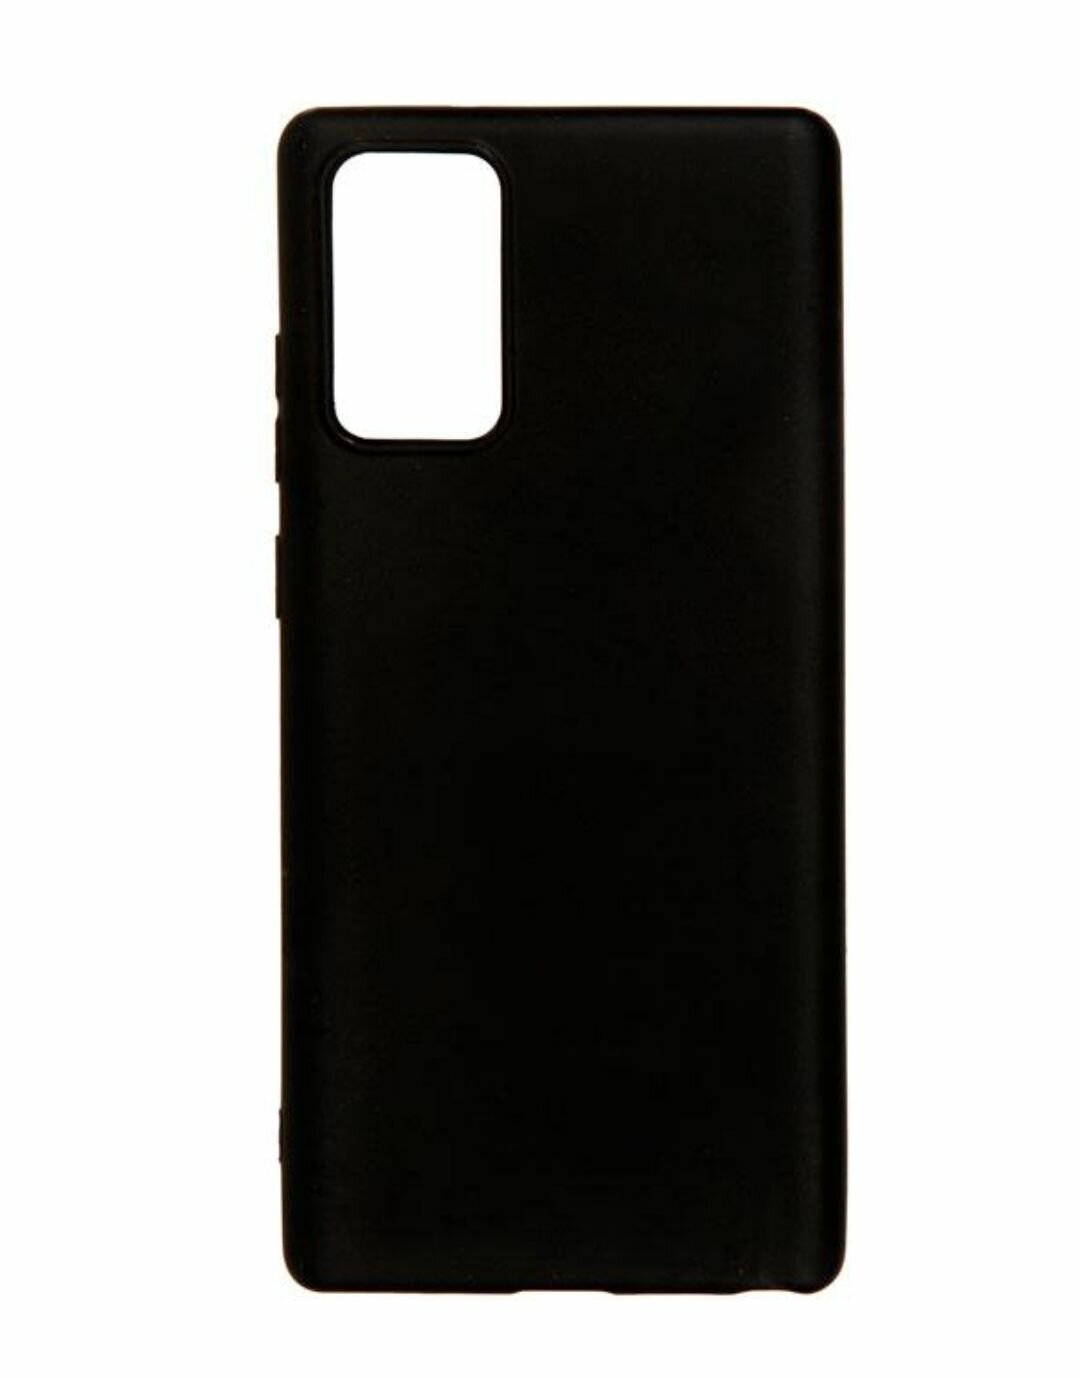 Samsung Galaxy Note 20 Силиконовый чёрный чехол бампер для Самсунг гелакси нот 20